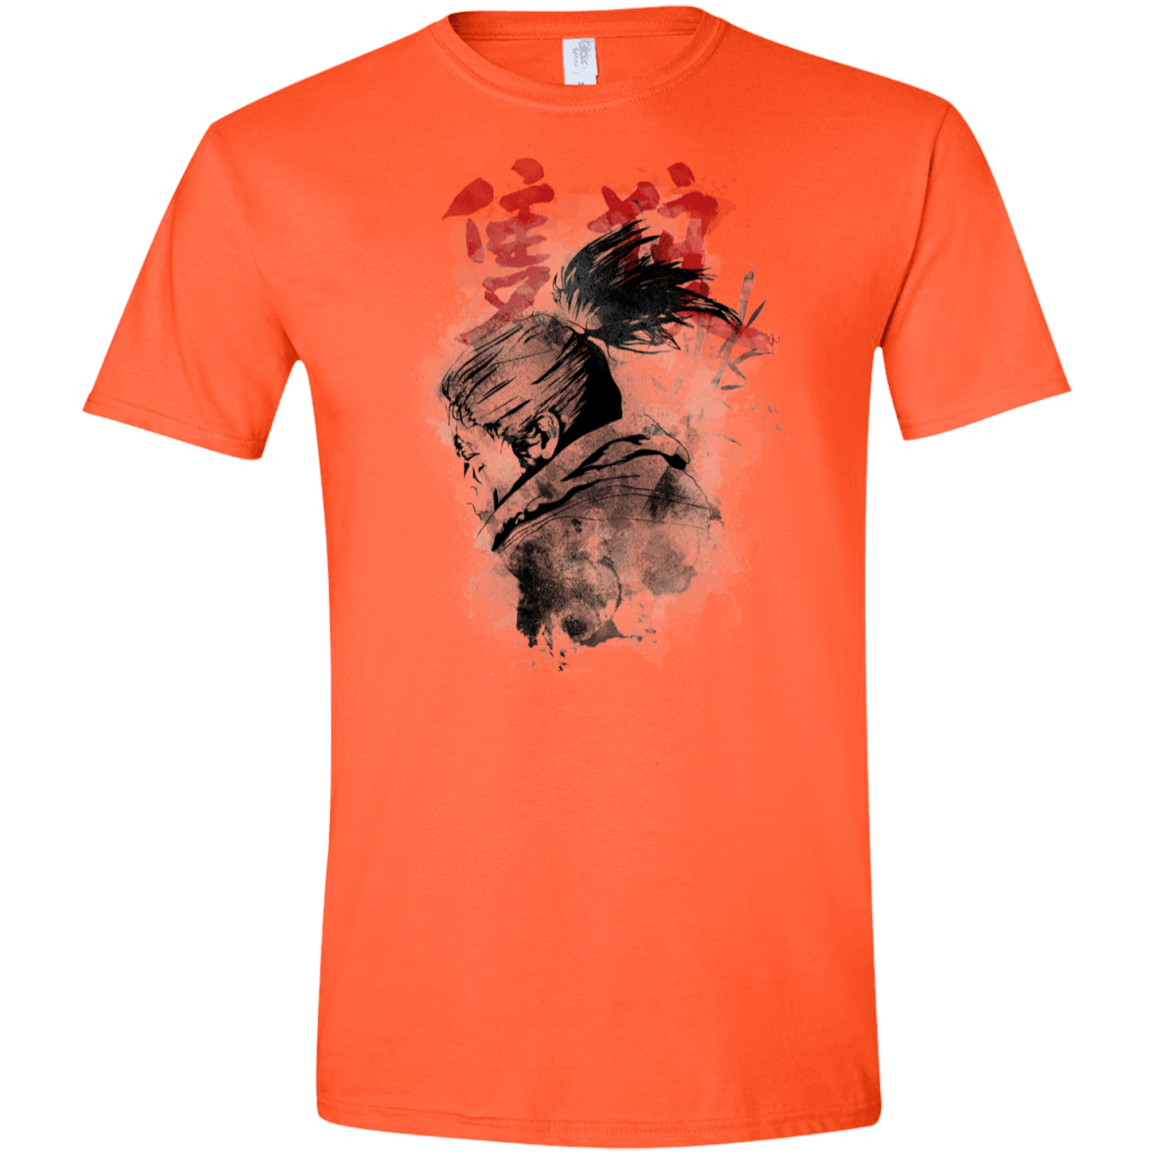 T-Shirts Orange / S Shinobi Spirit Men's Semi-Fitted Softstyle